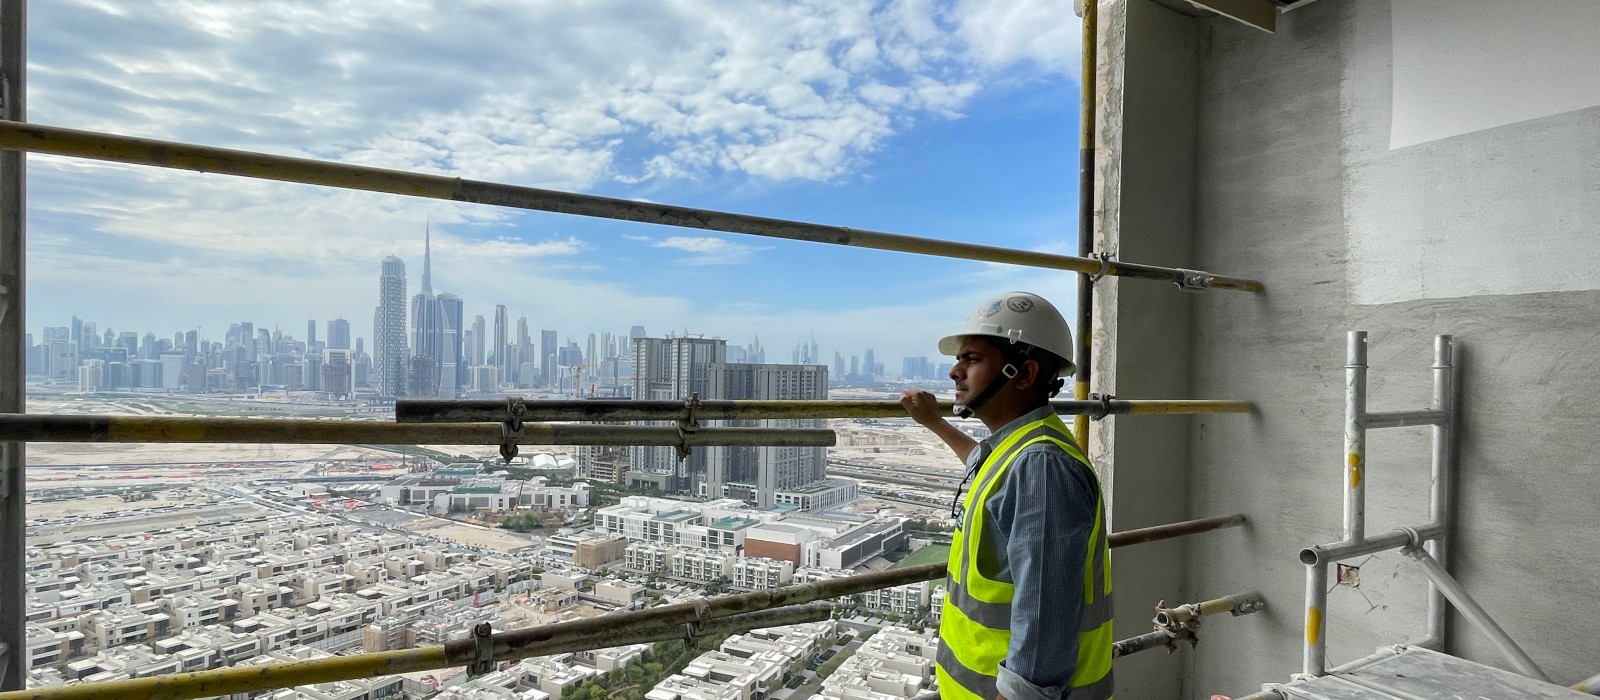 Above the rooftops of Dubai: Vineet Kumar Bhaskar on a construction site. The Dubai skyline in the background.